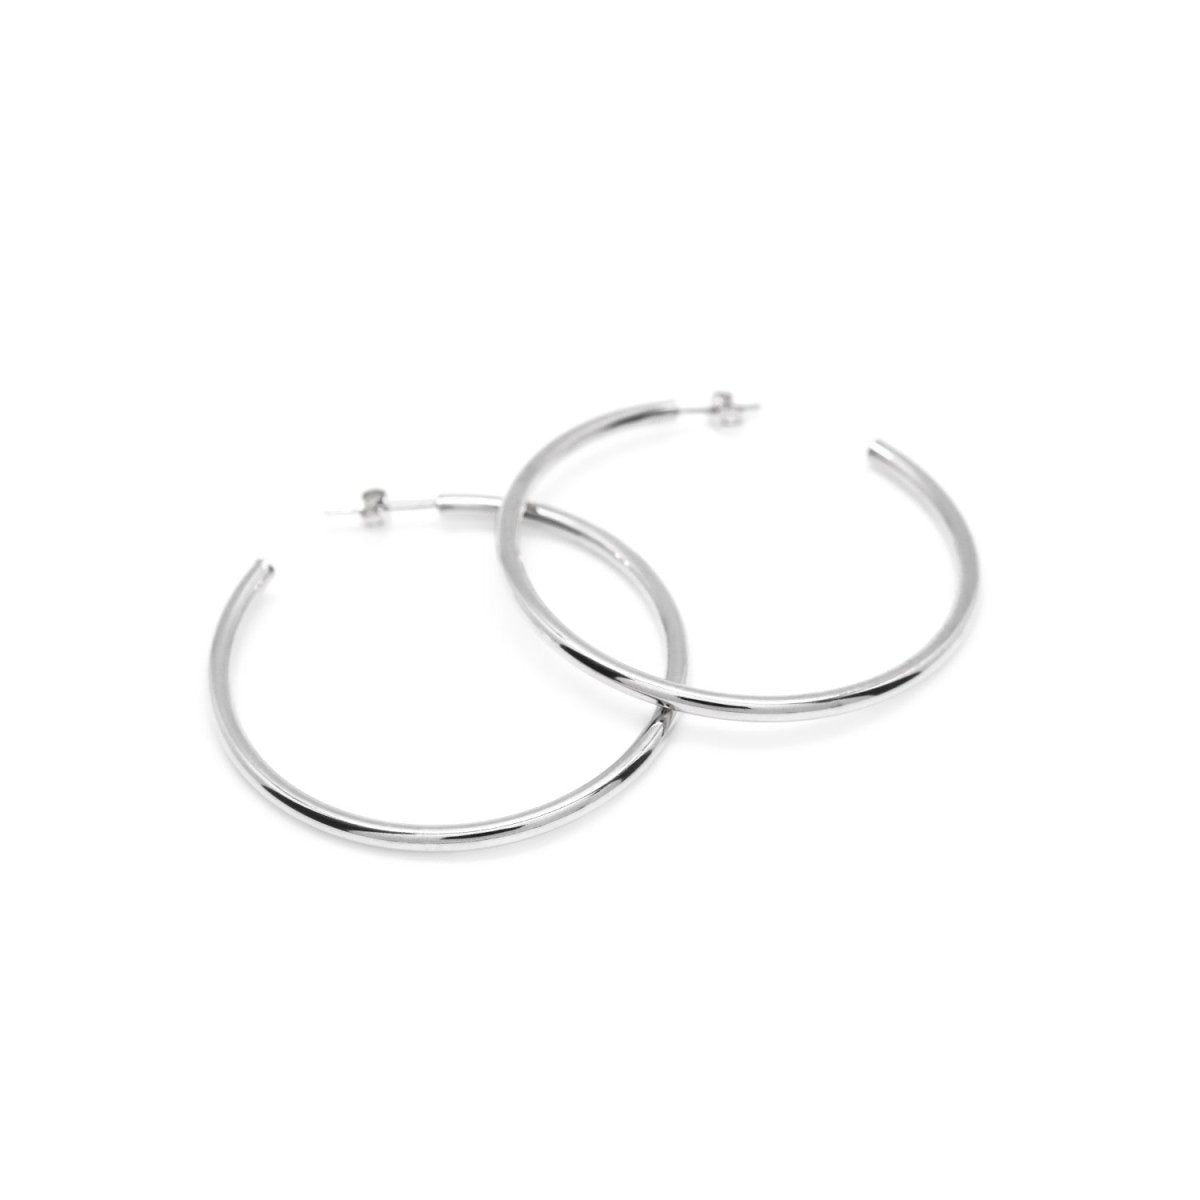 Earrings - Large round and plain silver hoop earrings